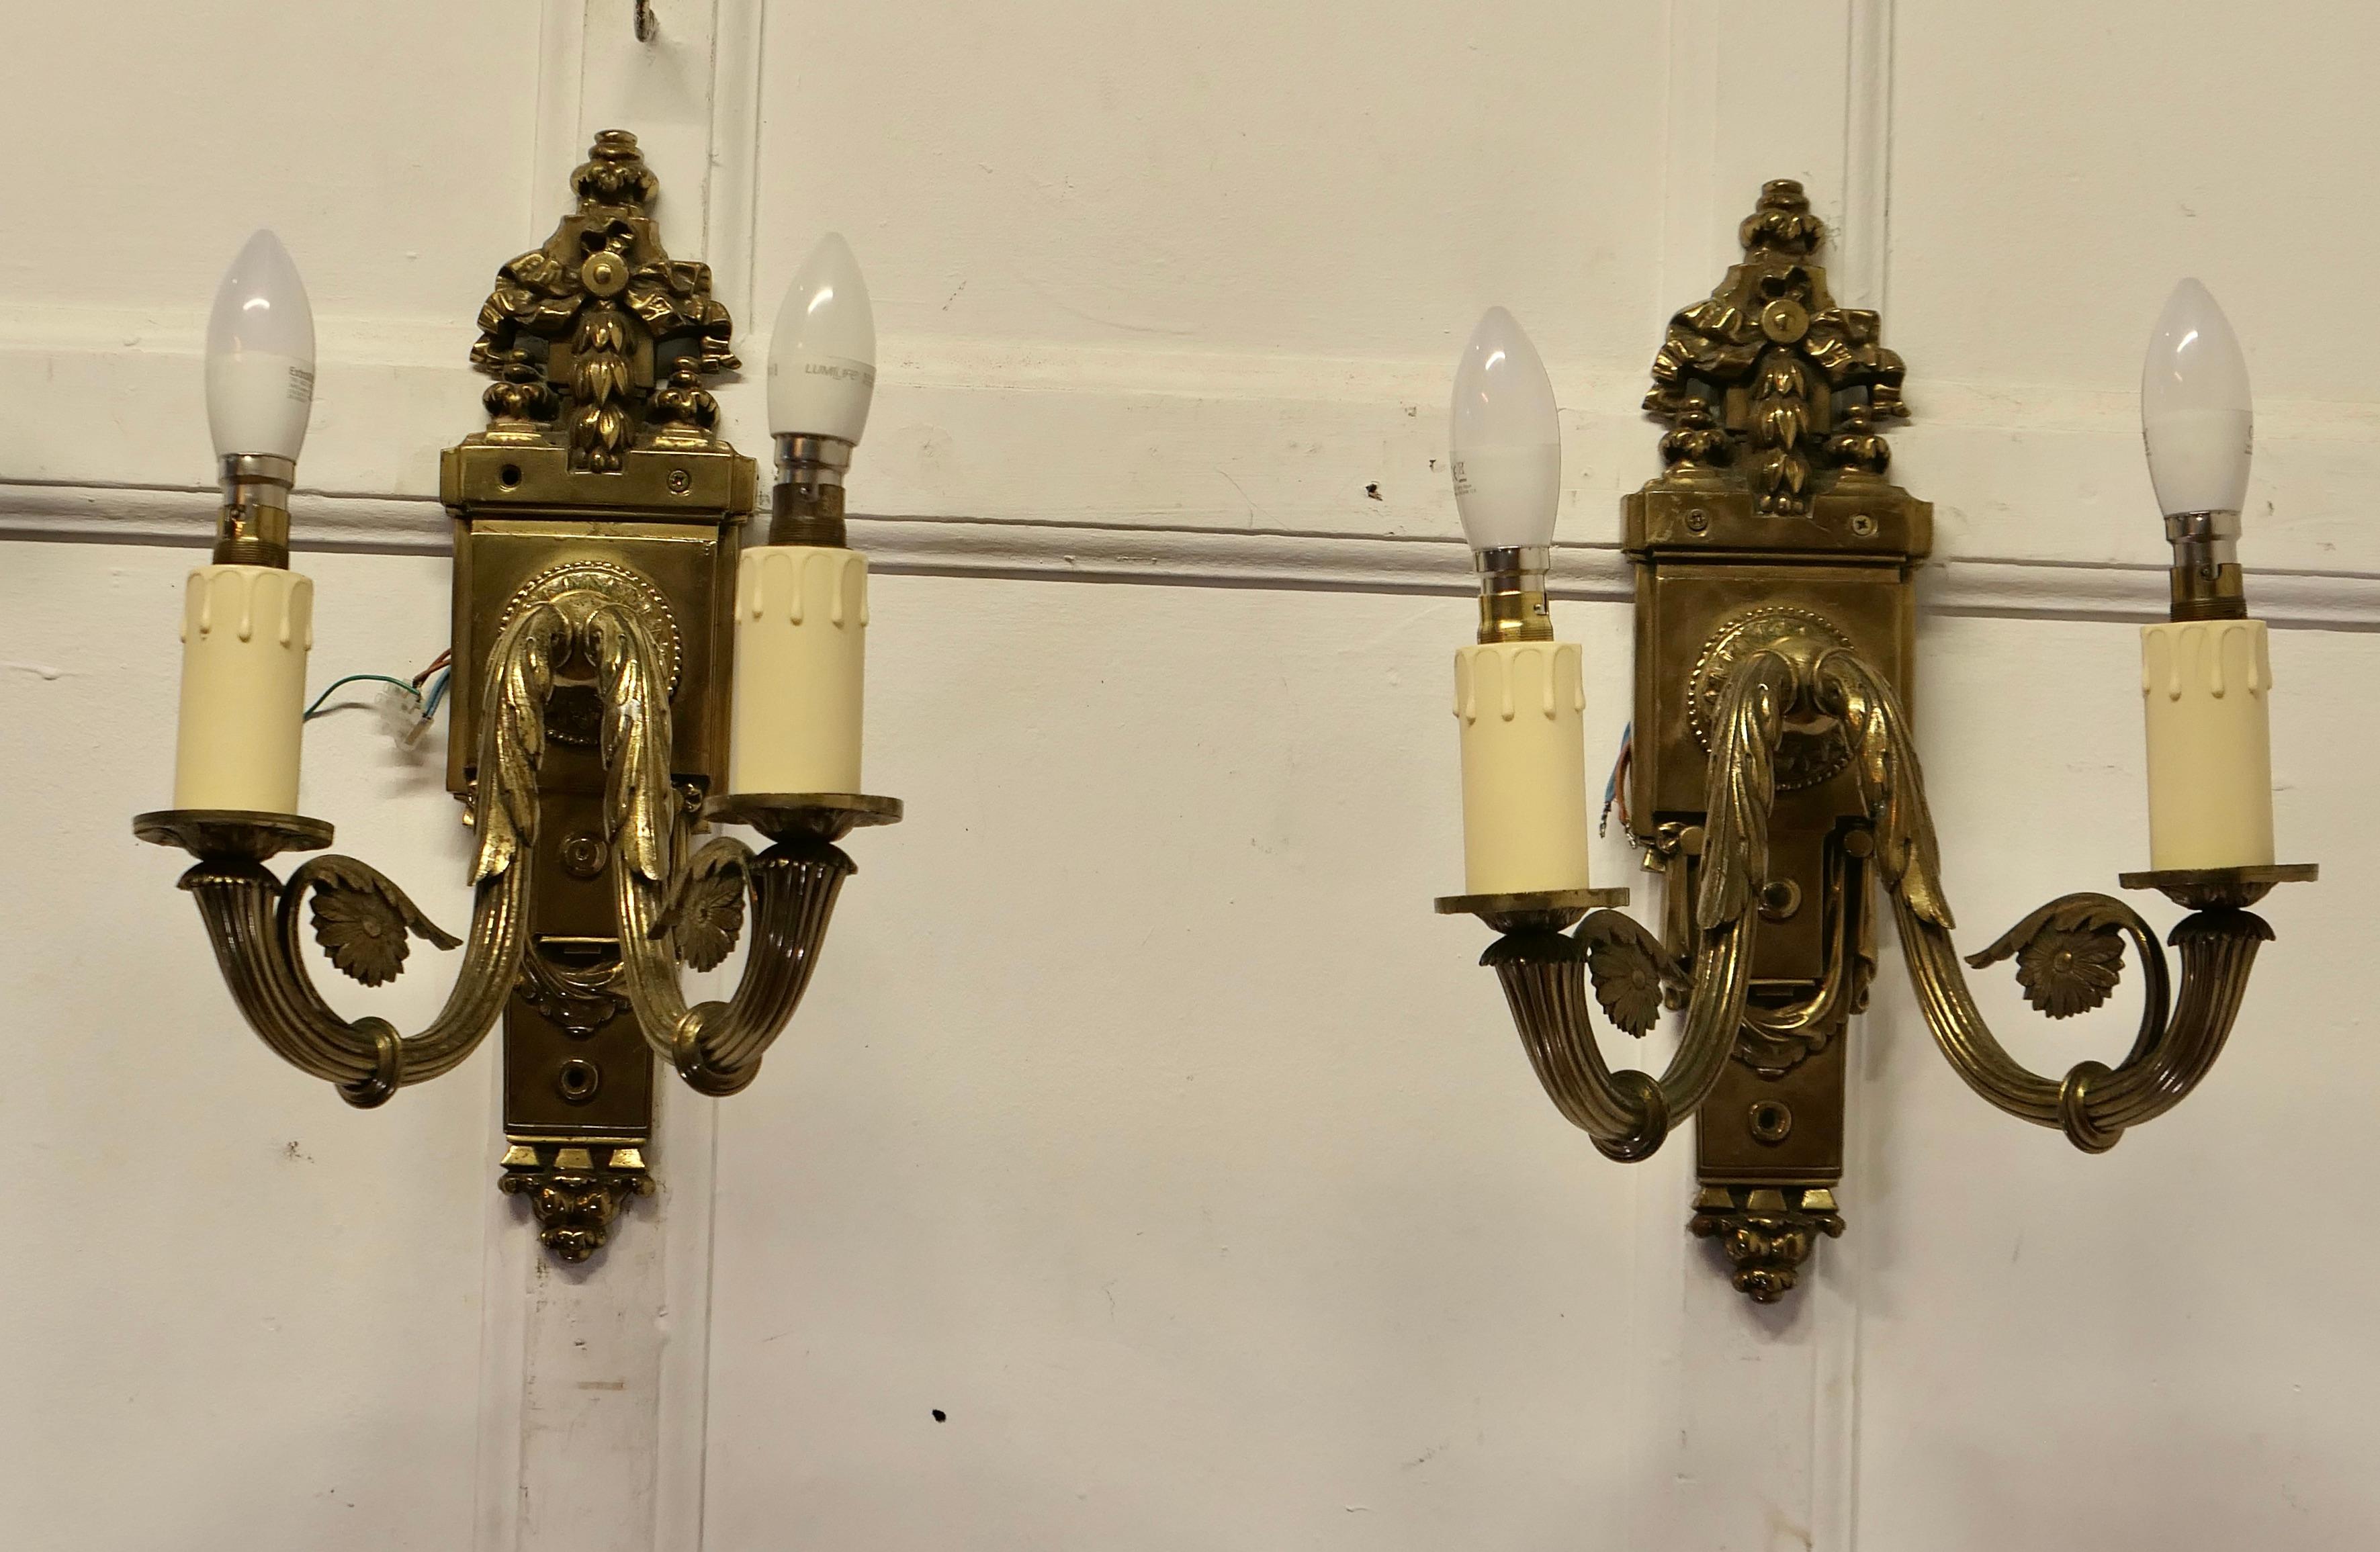 Ein Paar Neo Classical Large Brass Twin Wall Lights

Dies ist ein sehr attraktives Paar Leuchten sie sind sehr schwer und dekorativ jede der Leuchten haben 2 Wandleuchter 

Die Lichter sind in gutem Vintage-Zustand und funktionieren, sie müssen an